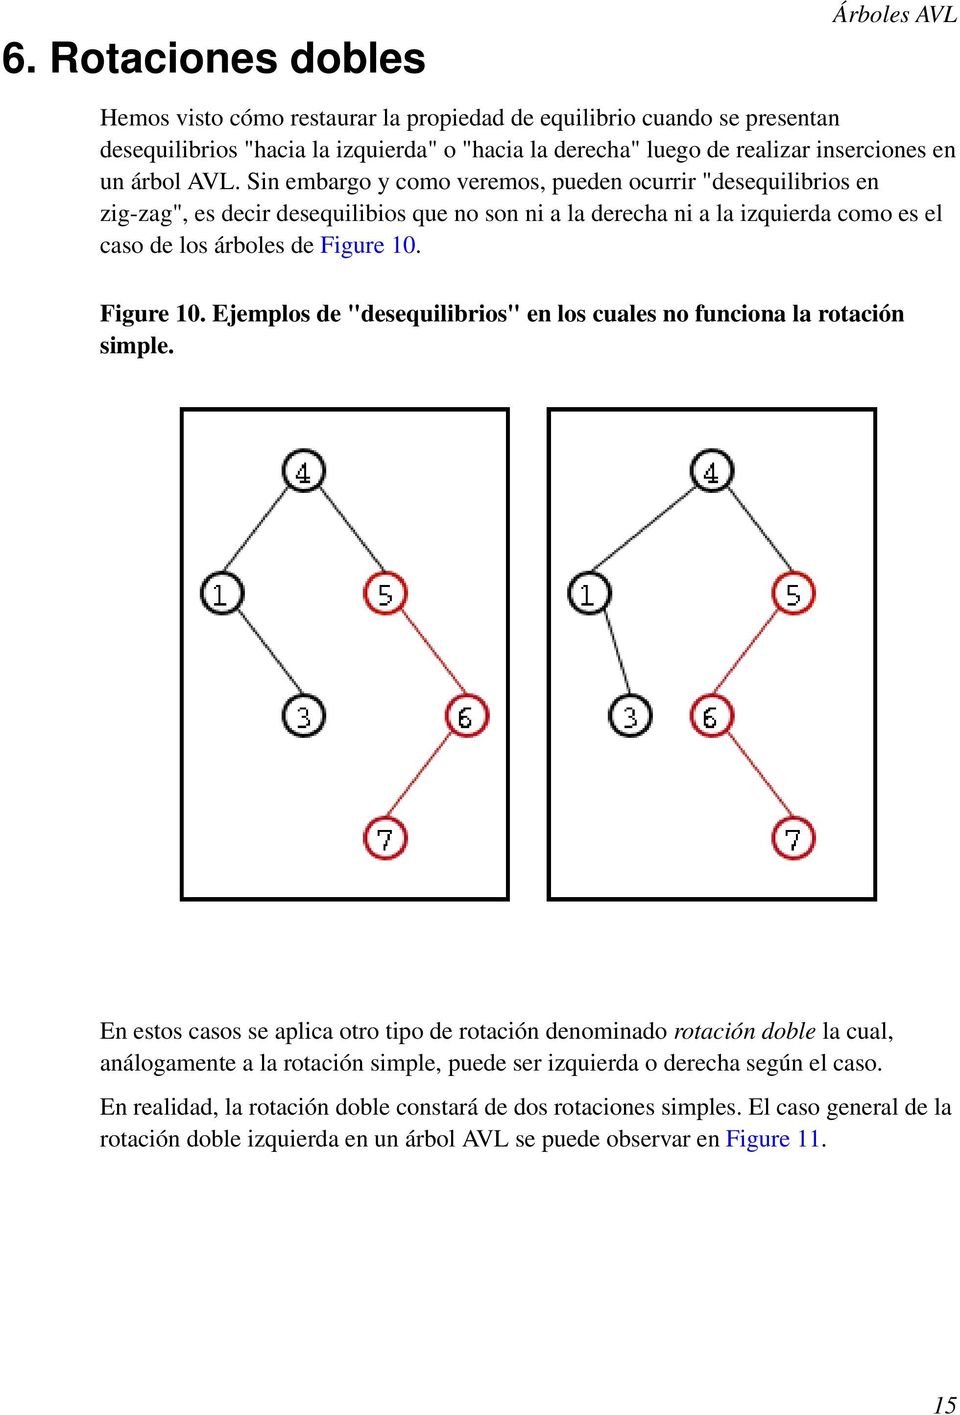 Figure 10. Ejemplos de "desequilibrios" en los cuales no funciona la rotación simple.